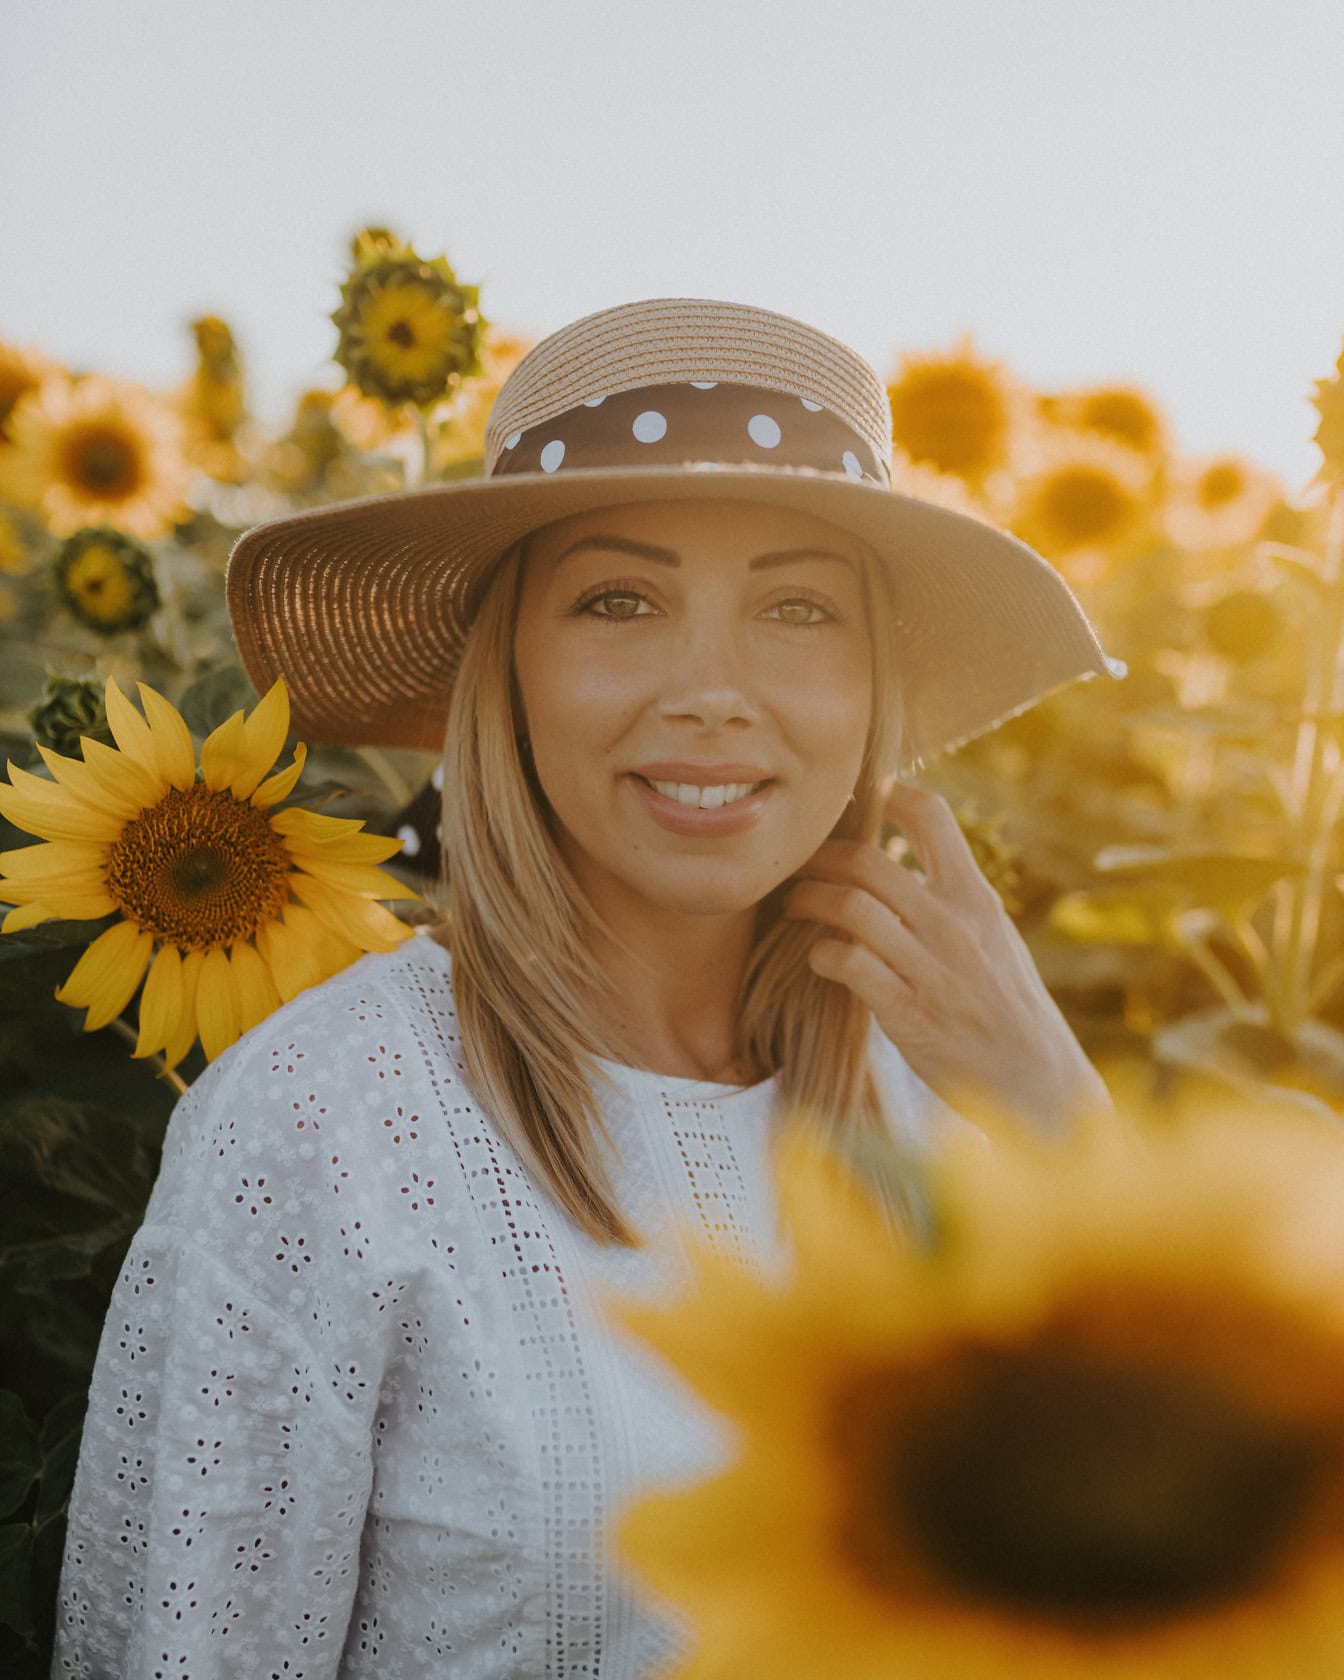 Професійне портретне фото з красивою молодою жінкою, фотомоделлю в солом’яному капелюсі на соняшниковому полі з сонячними променями в якості підсвічування